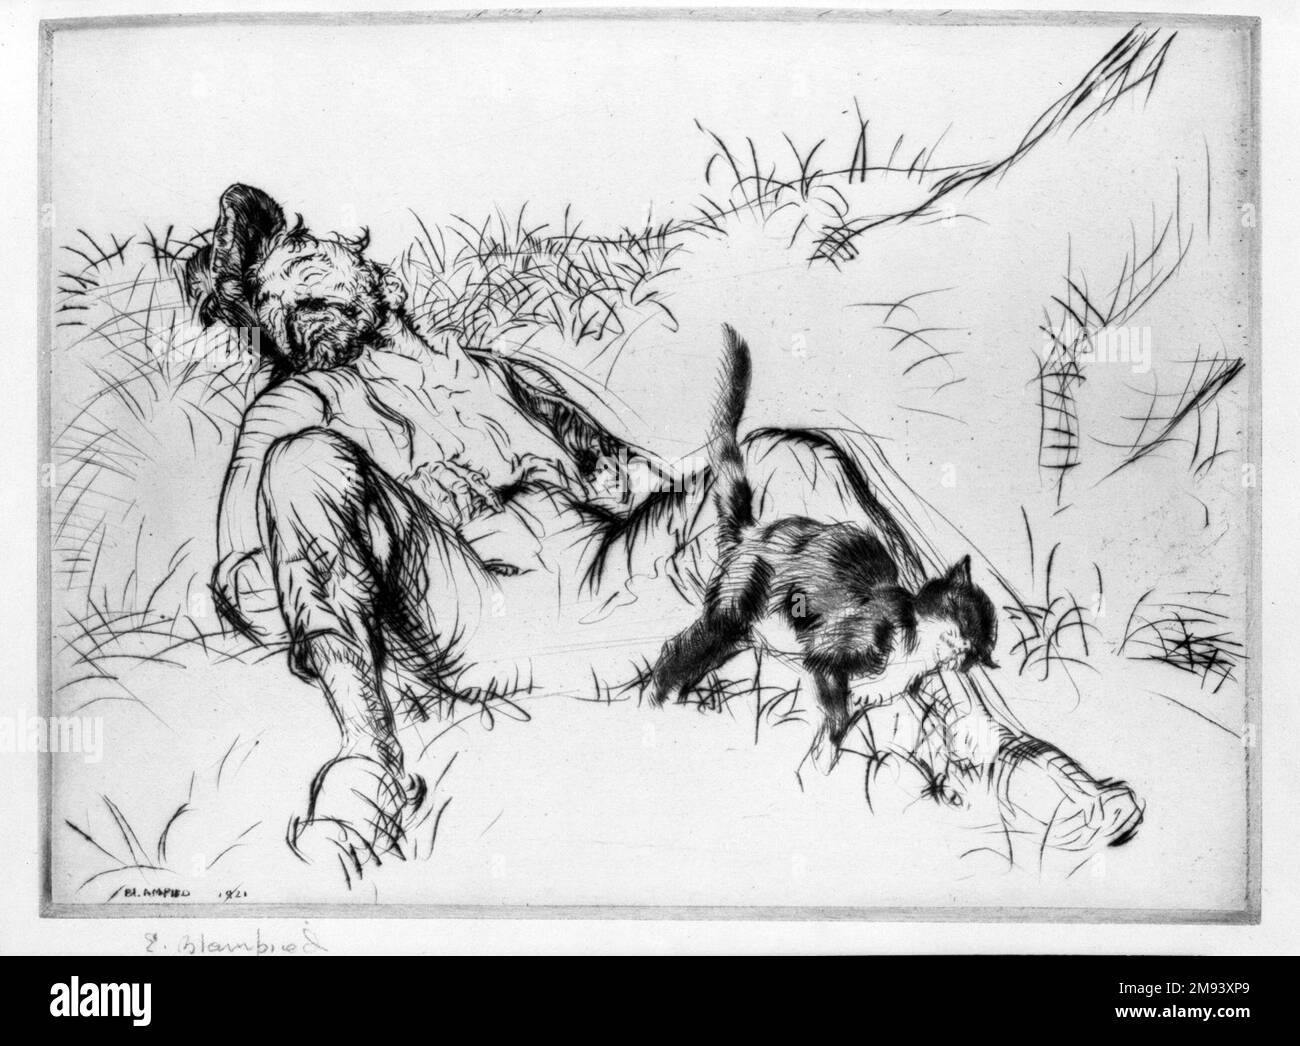 Purring and Snoring Edmund Blampied (britannique, 1886-1966). , 1921. Drypoint sur papier vélin, feuille : 7 x 9 3/8 po. (17,8 x 23,8 cm). Art européen 1921 Banque D'Images